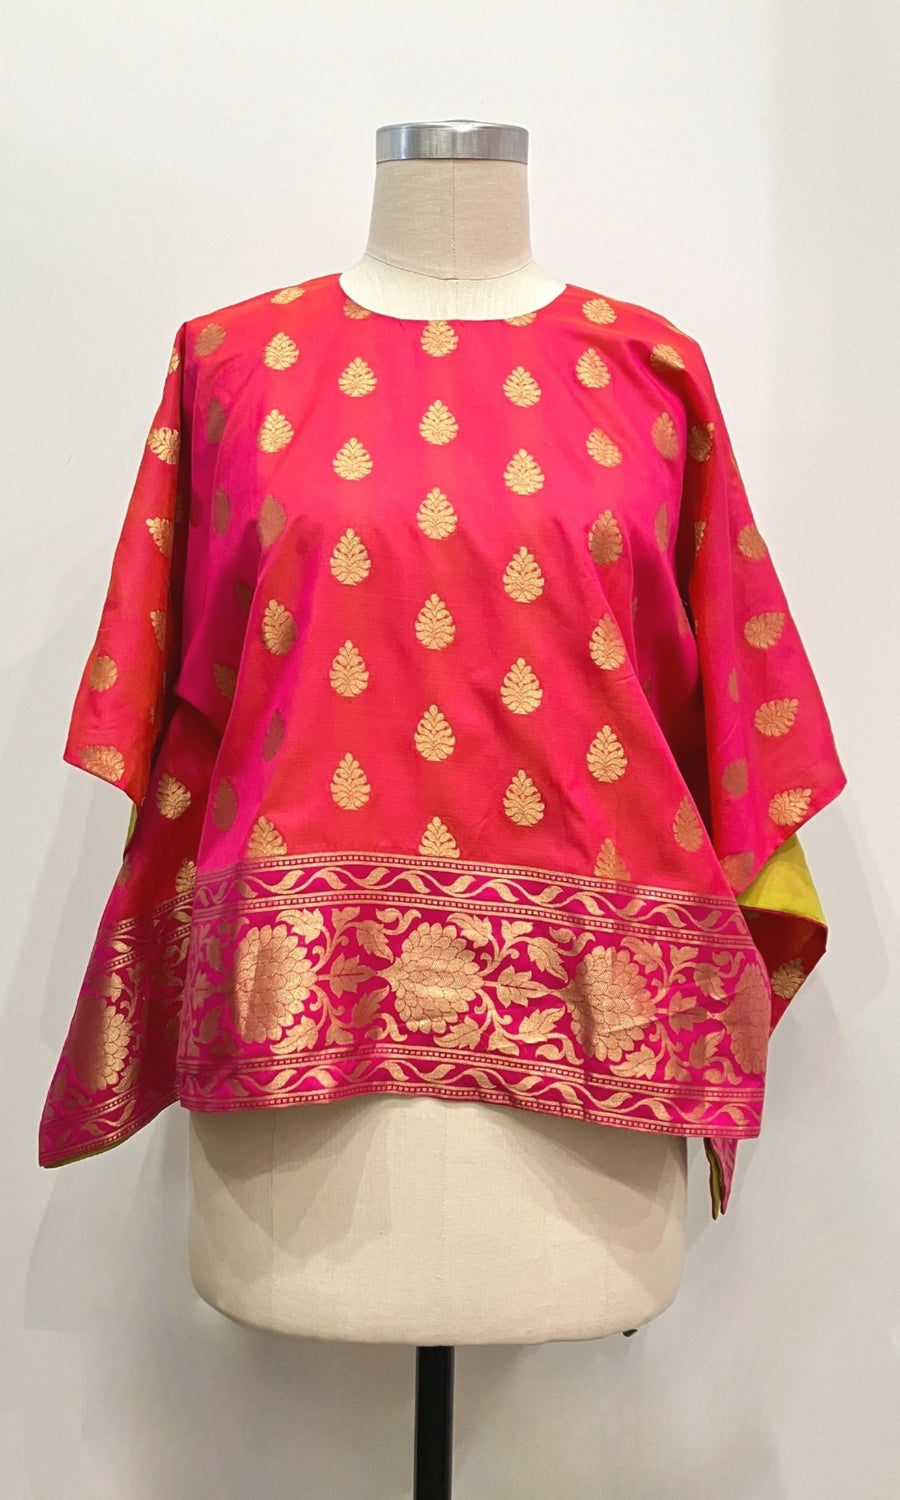 Hot Pink Sari Tunic Top